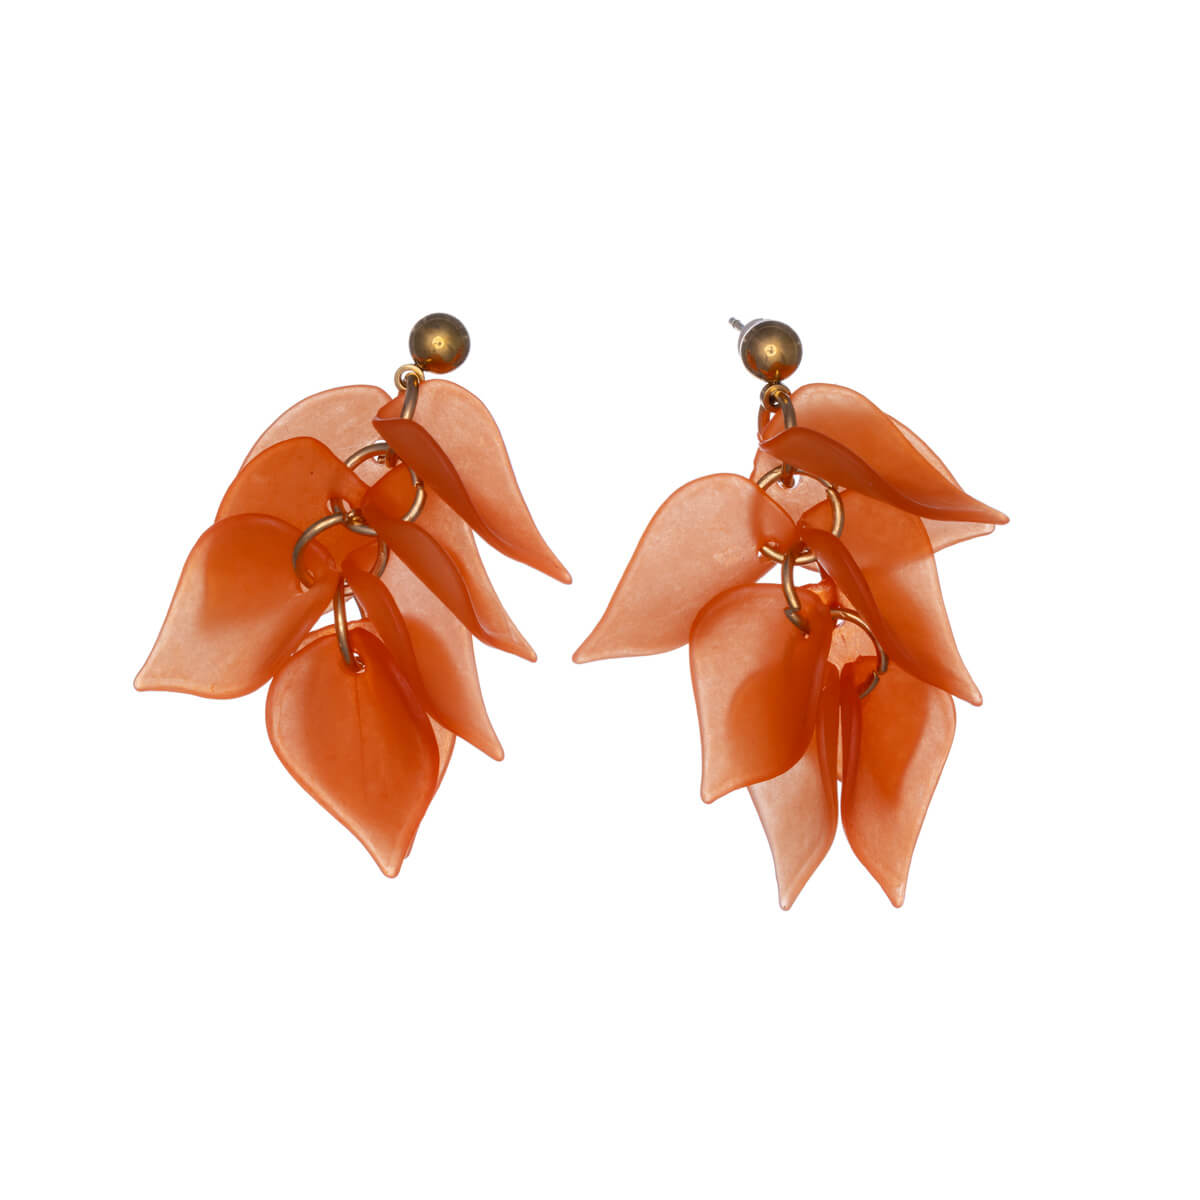 Leaf cluster hanging earrings